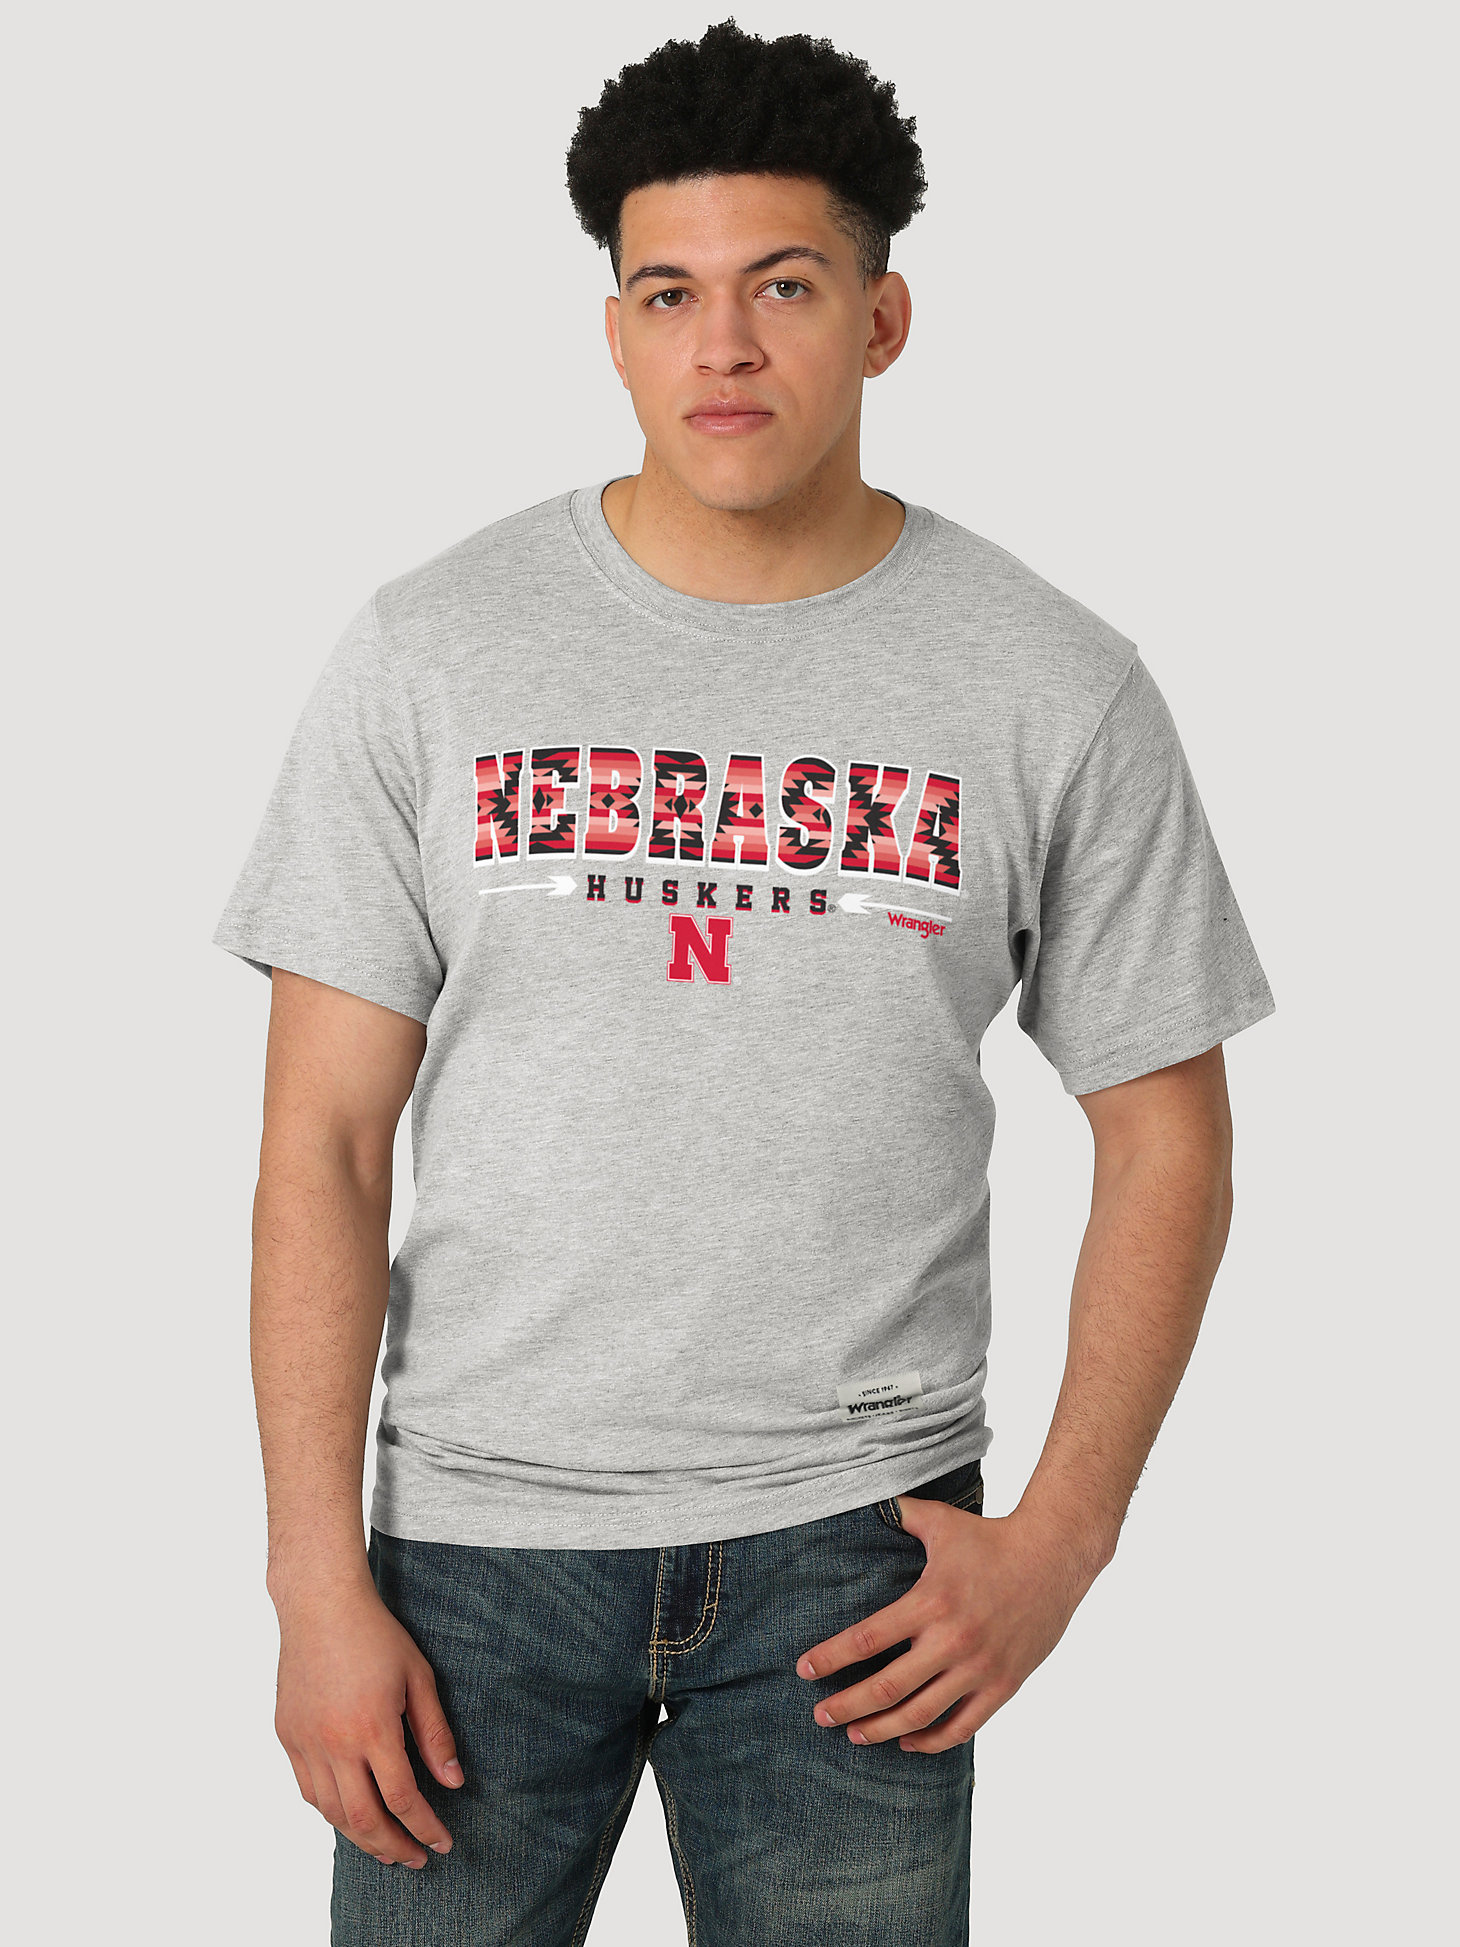 Wrangler Collegiate Sunset Printed Short Sleeve T-Shirt in University of Nebraska main view